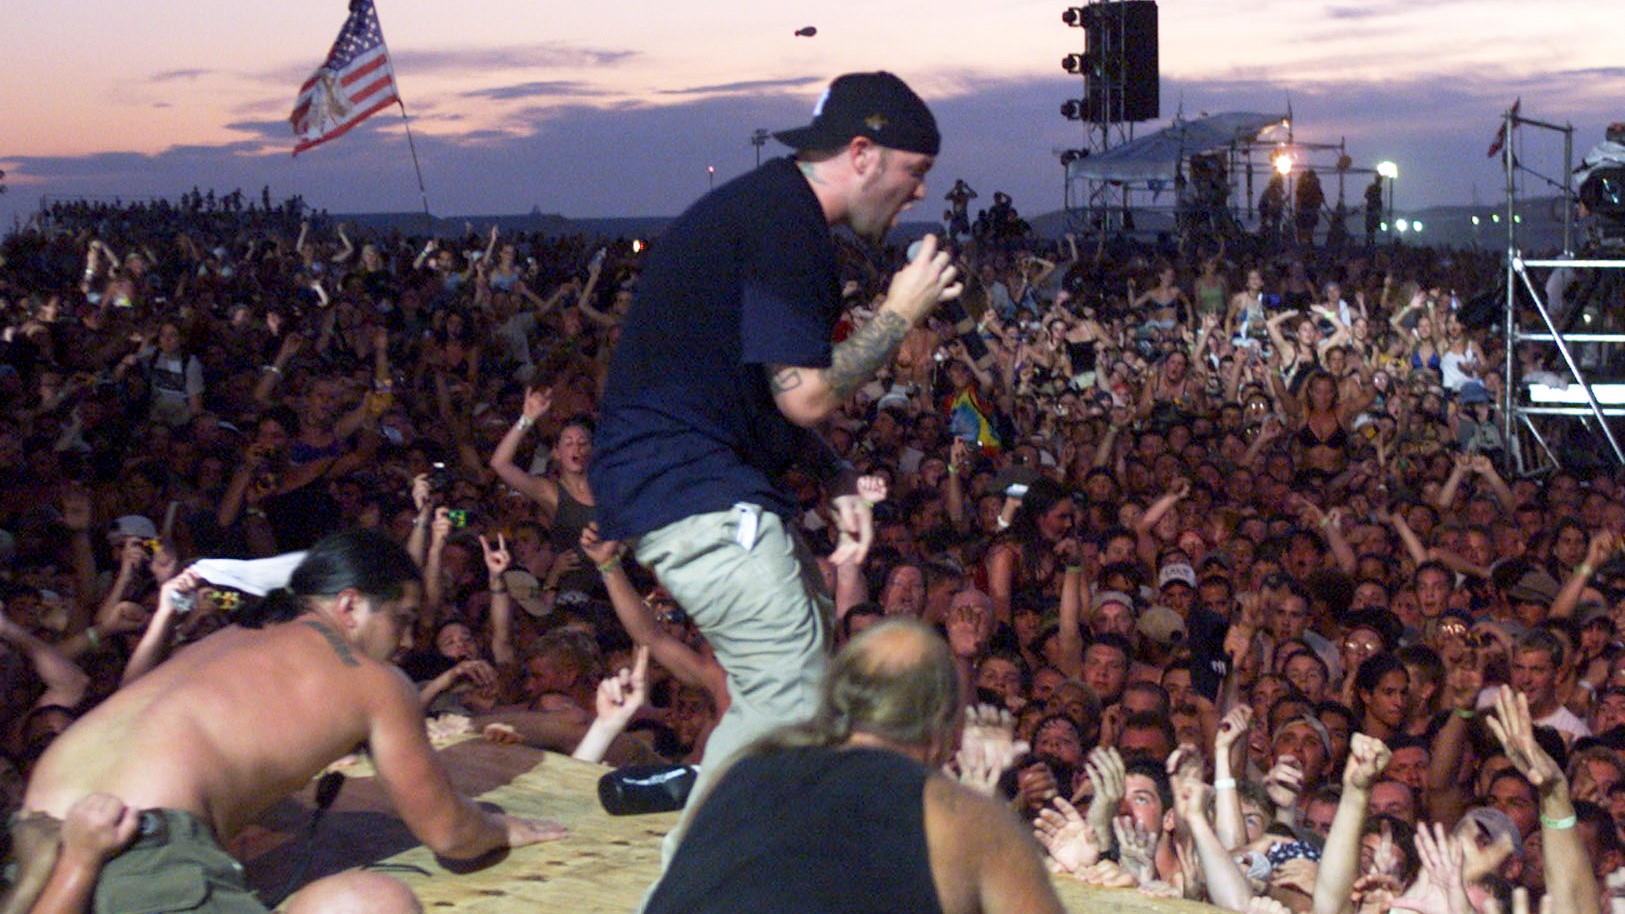 Fred Durst, a Limp Bizkit énekese hergeli a tömeget az 1999-es Woodstock Fesztiválon ( Fotó: Frank Micelotta/ImageDirect)